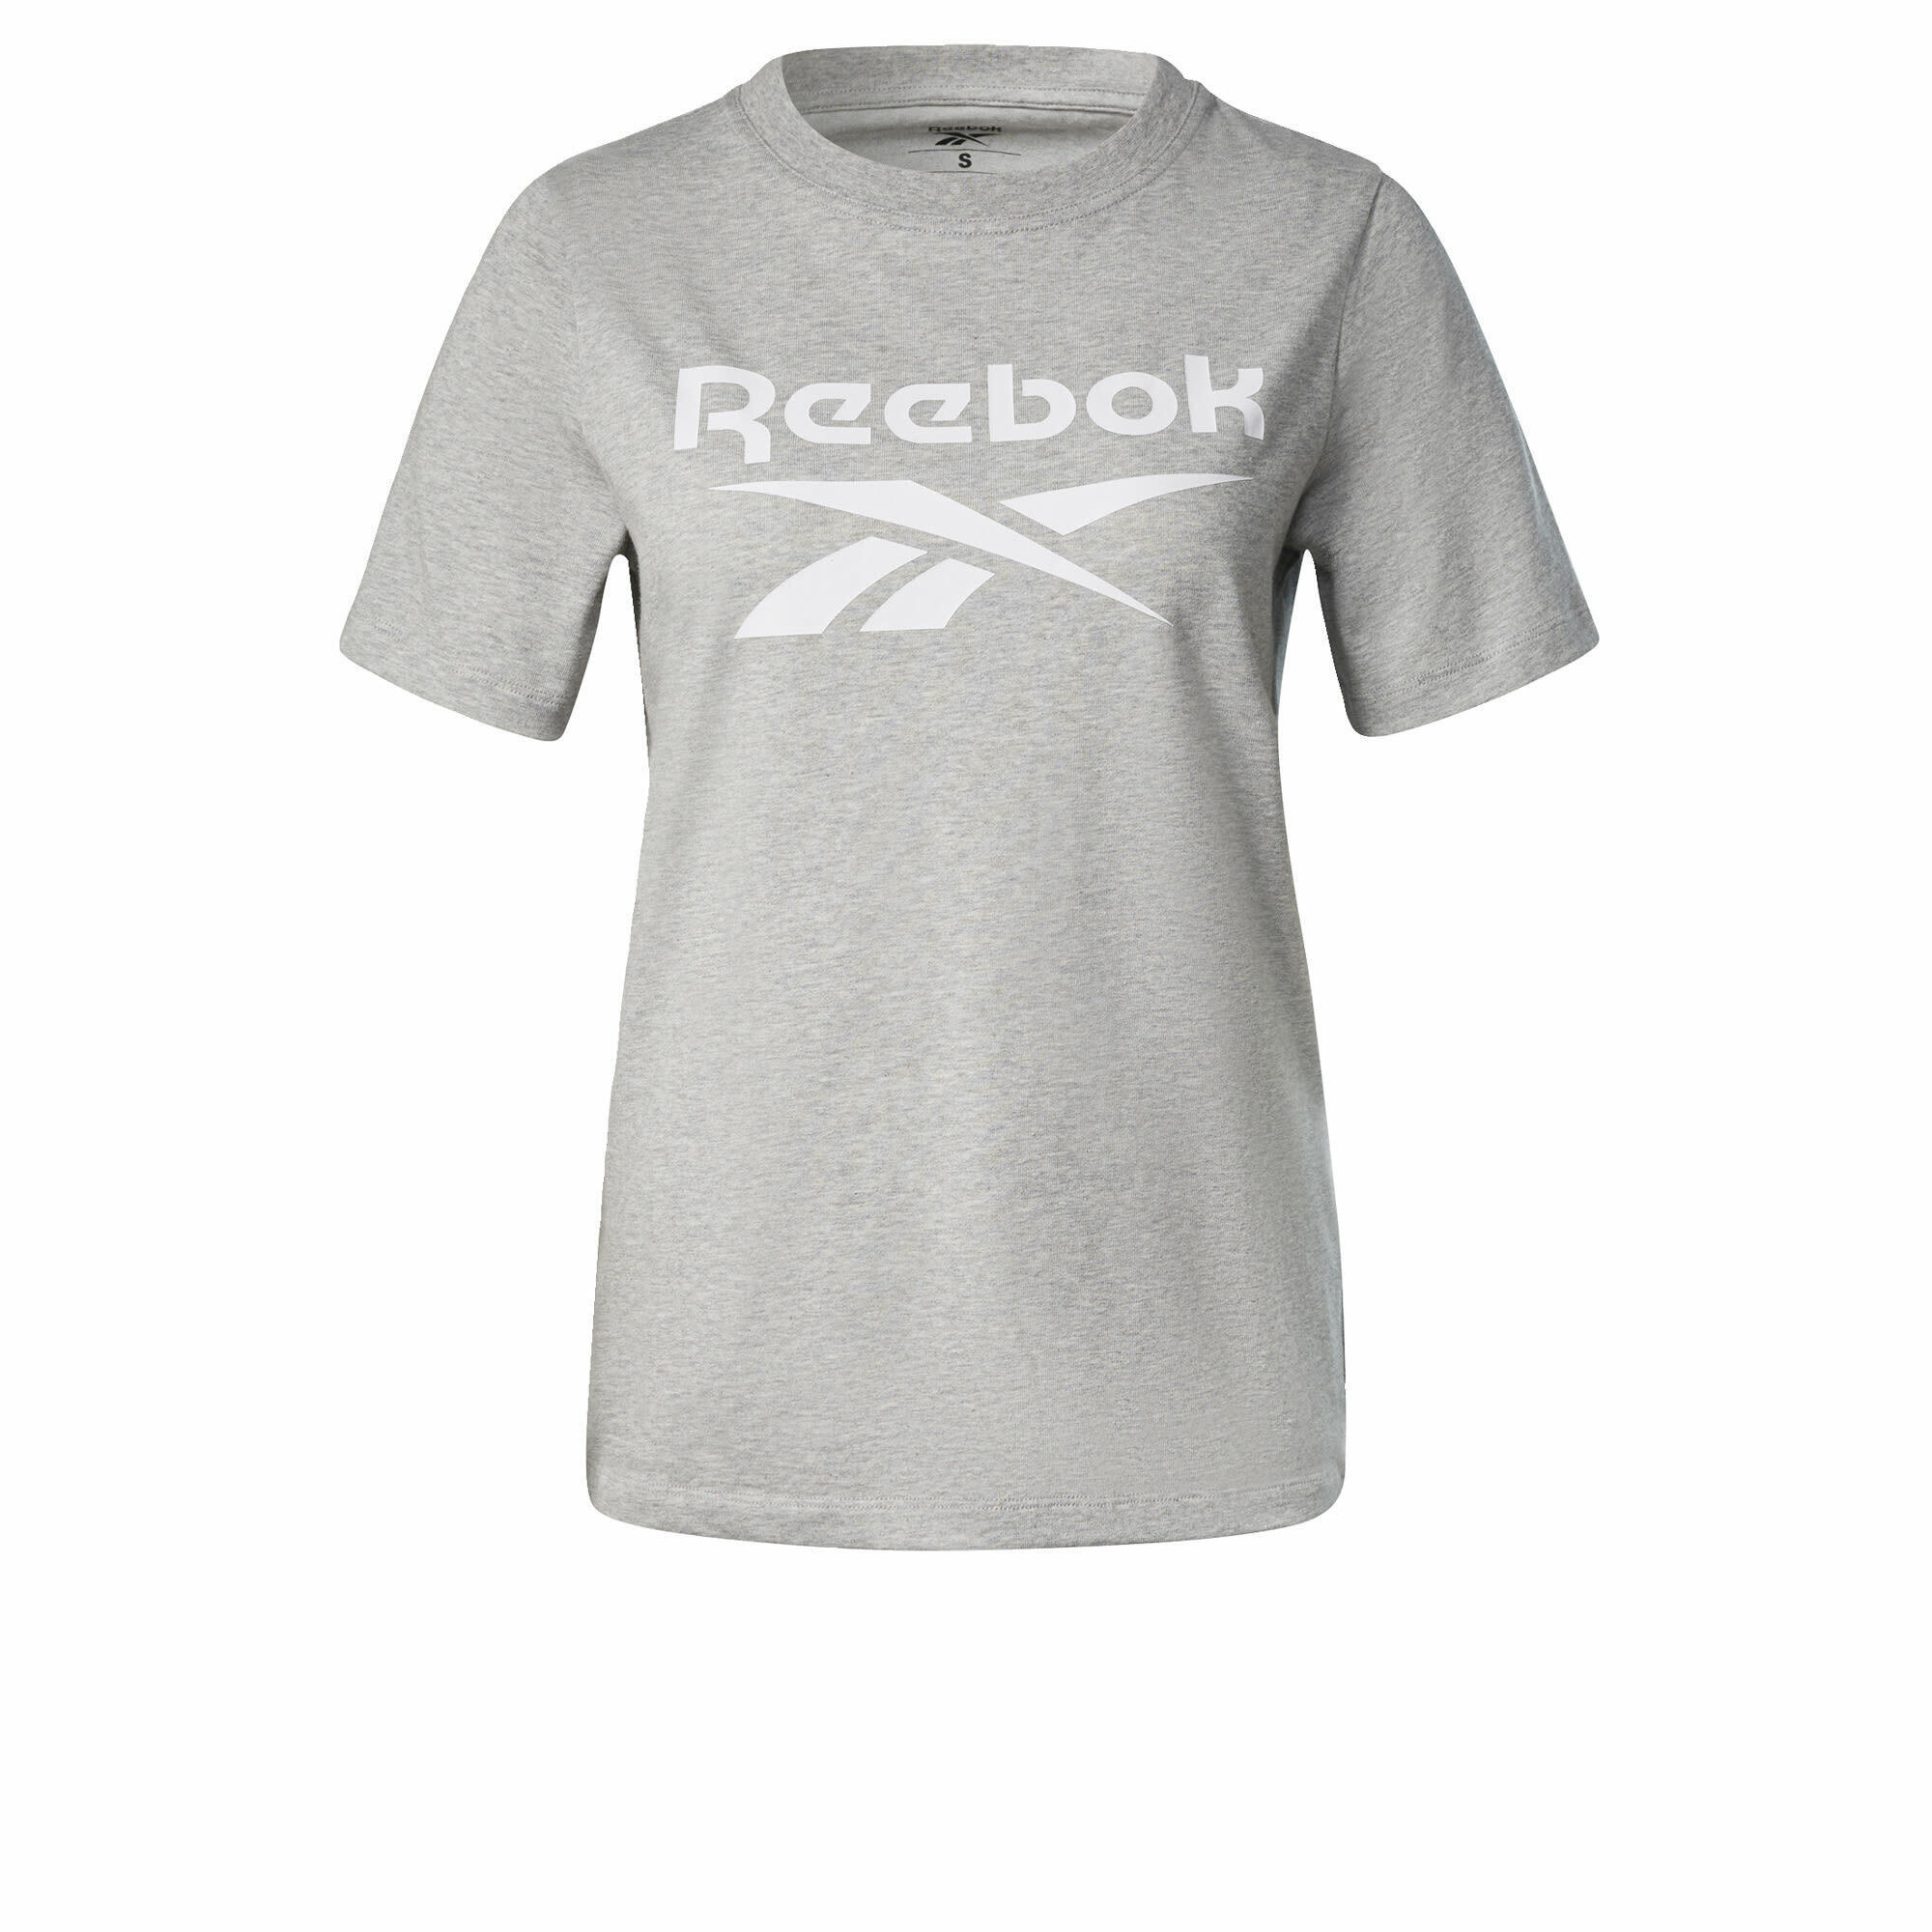 цена Женская футболка Reebok Recycled, серый